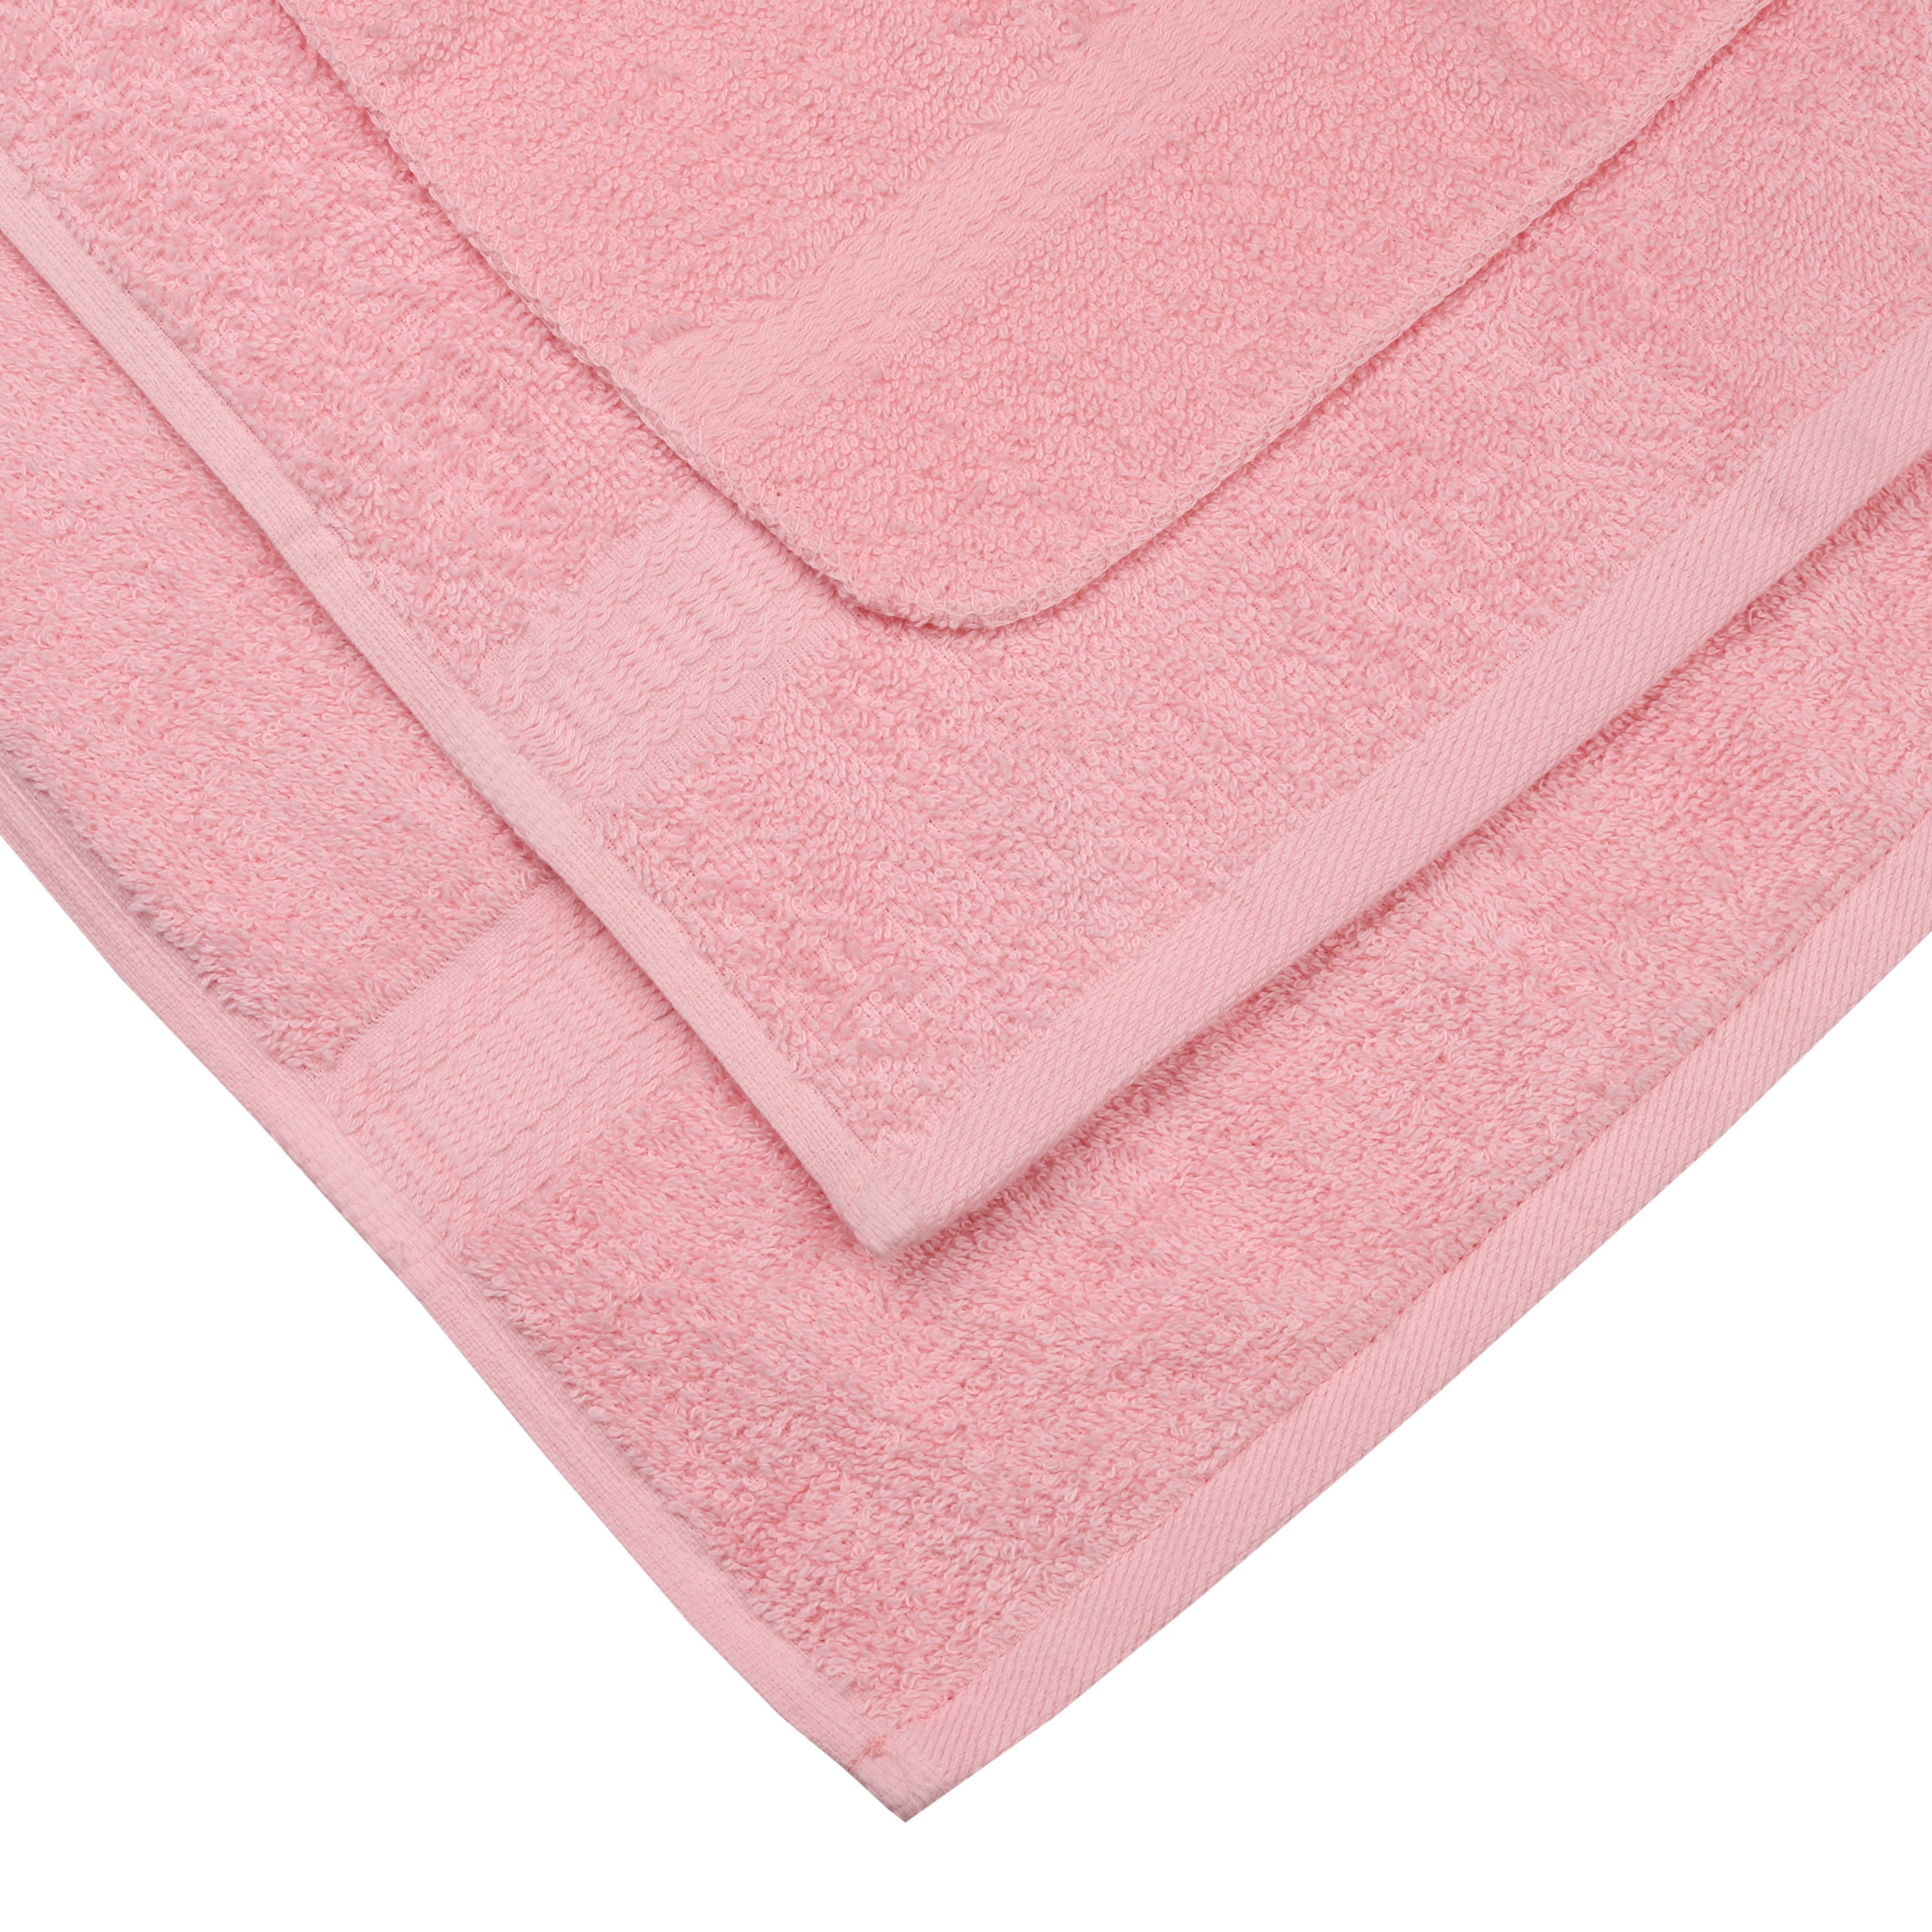 Caro Home Bolivia Bath Towel 2 Piece Pink 30 x 58